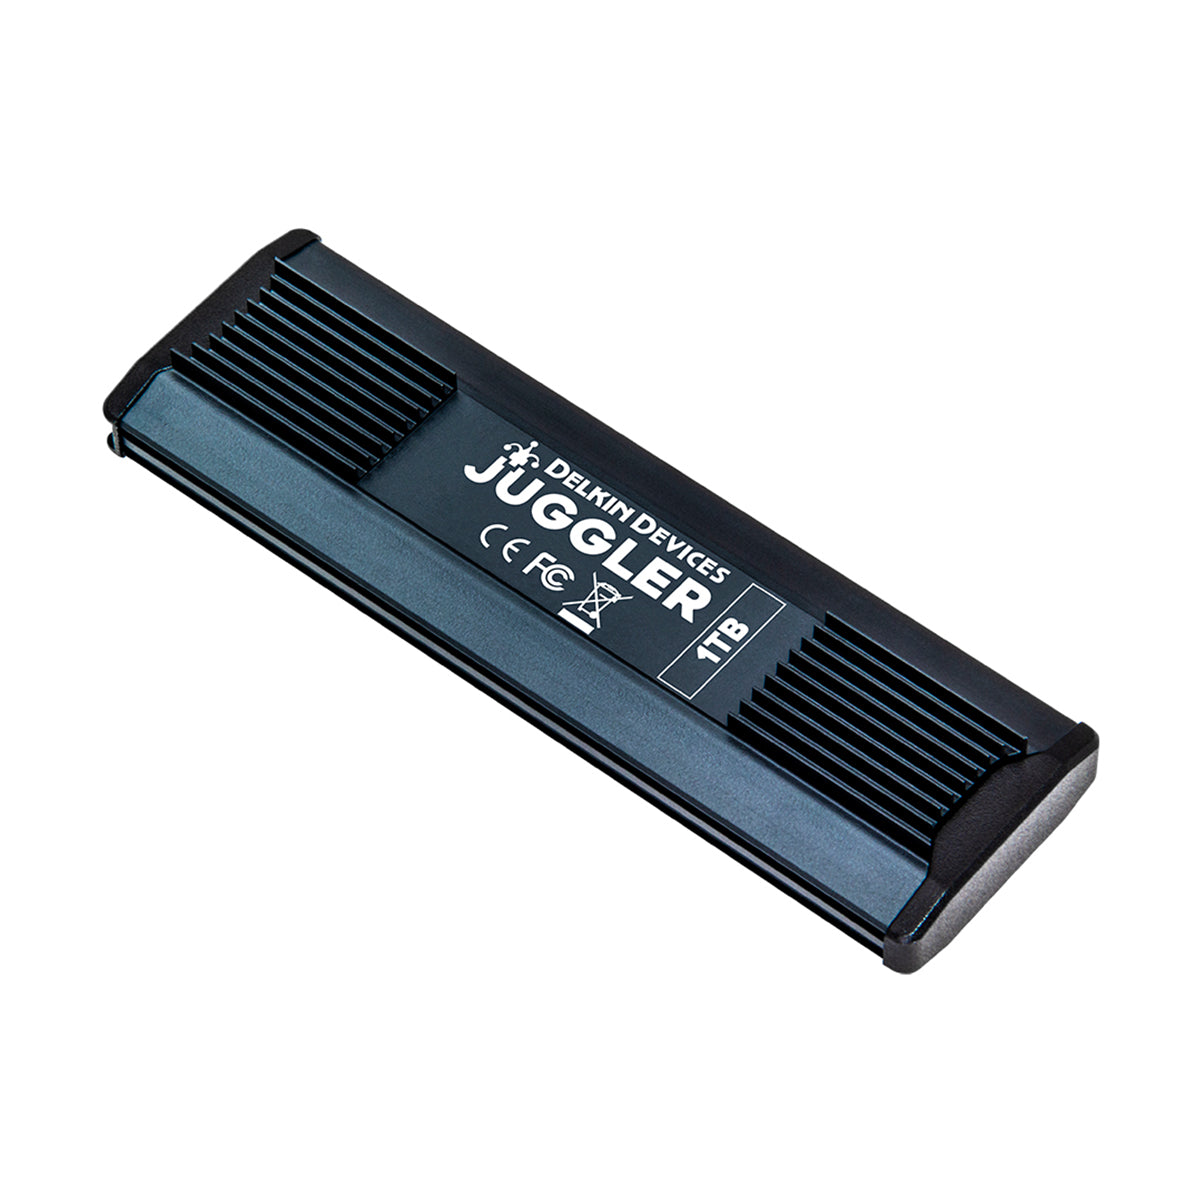 Delkin Juggler 1TB USB 3.2 SSD for Blackmagic Pocket Cinema